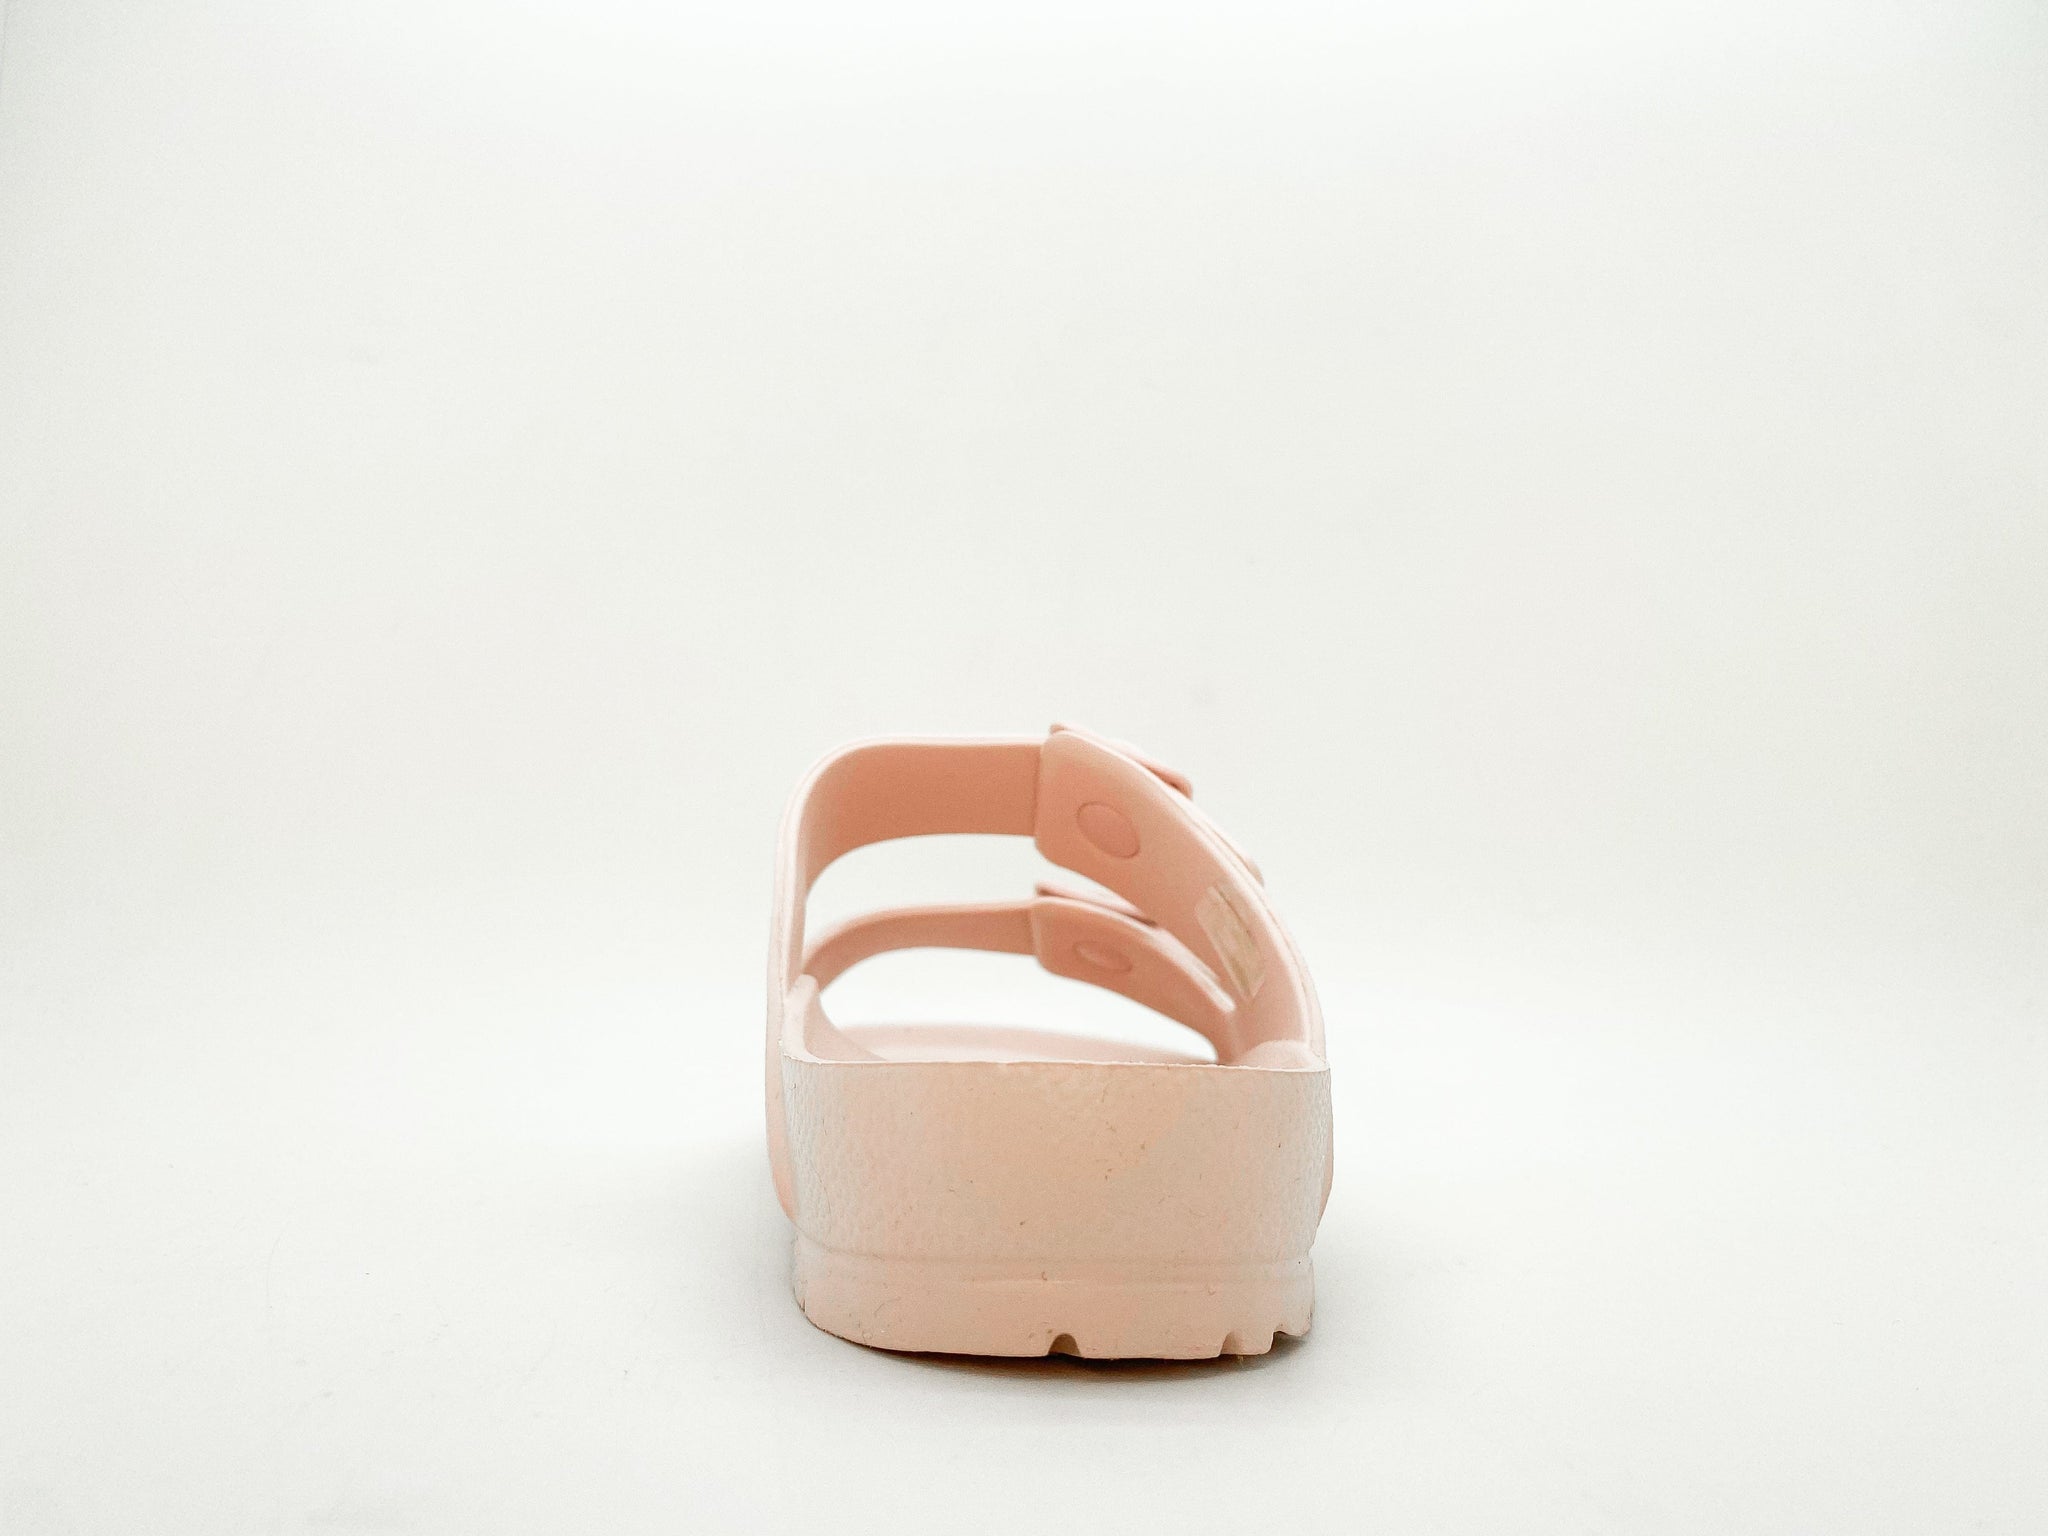 NAT 2 fodtøj thies 1856 ® Ecofoam Sandal lys rose bæredygtig mode etisk mode